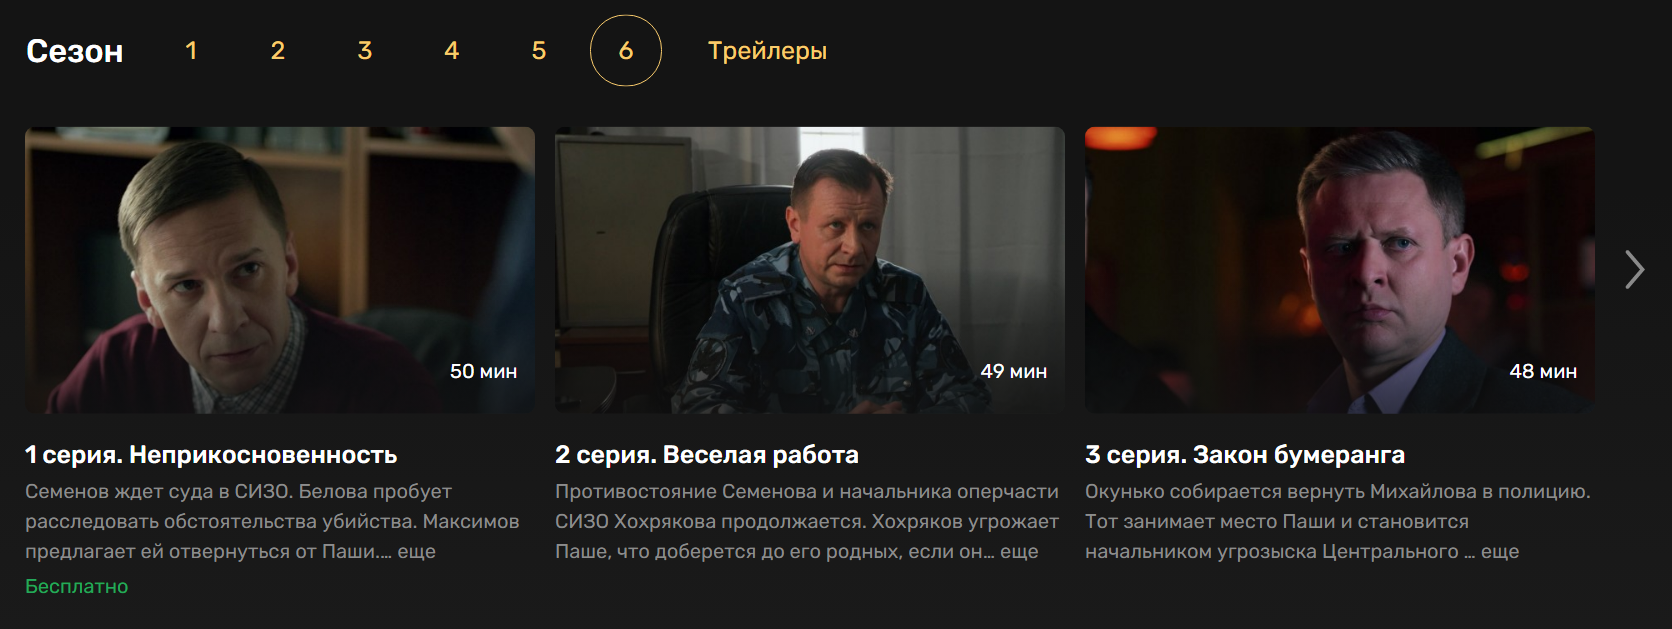 Все сезоны «Невского» в онлайн-кинотеатрах